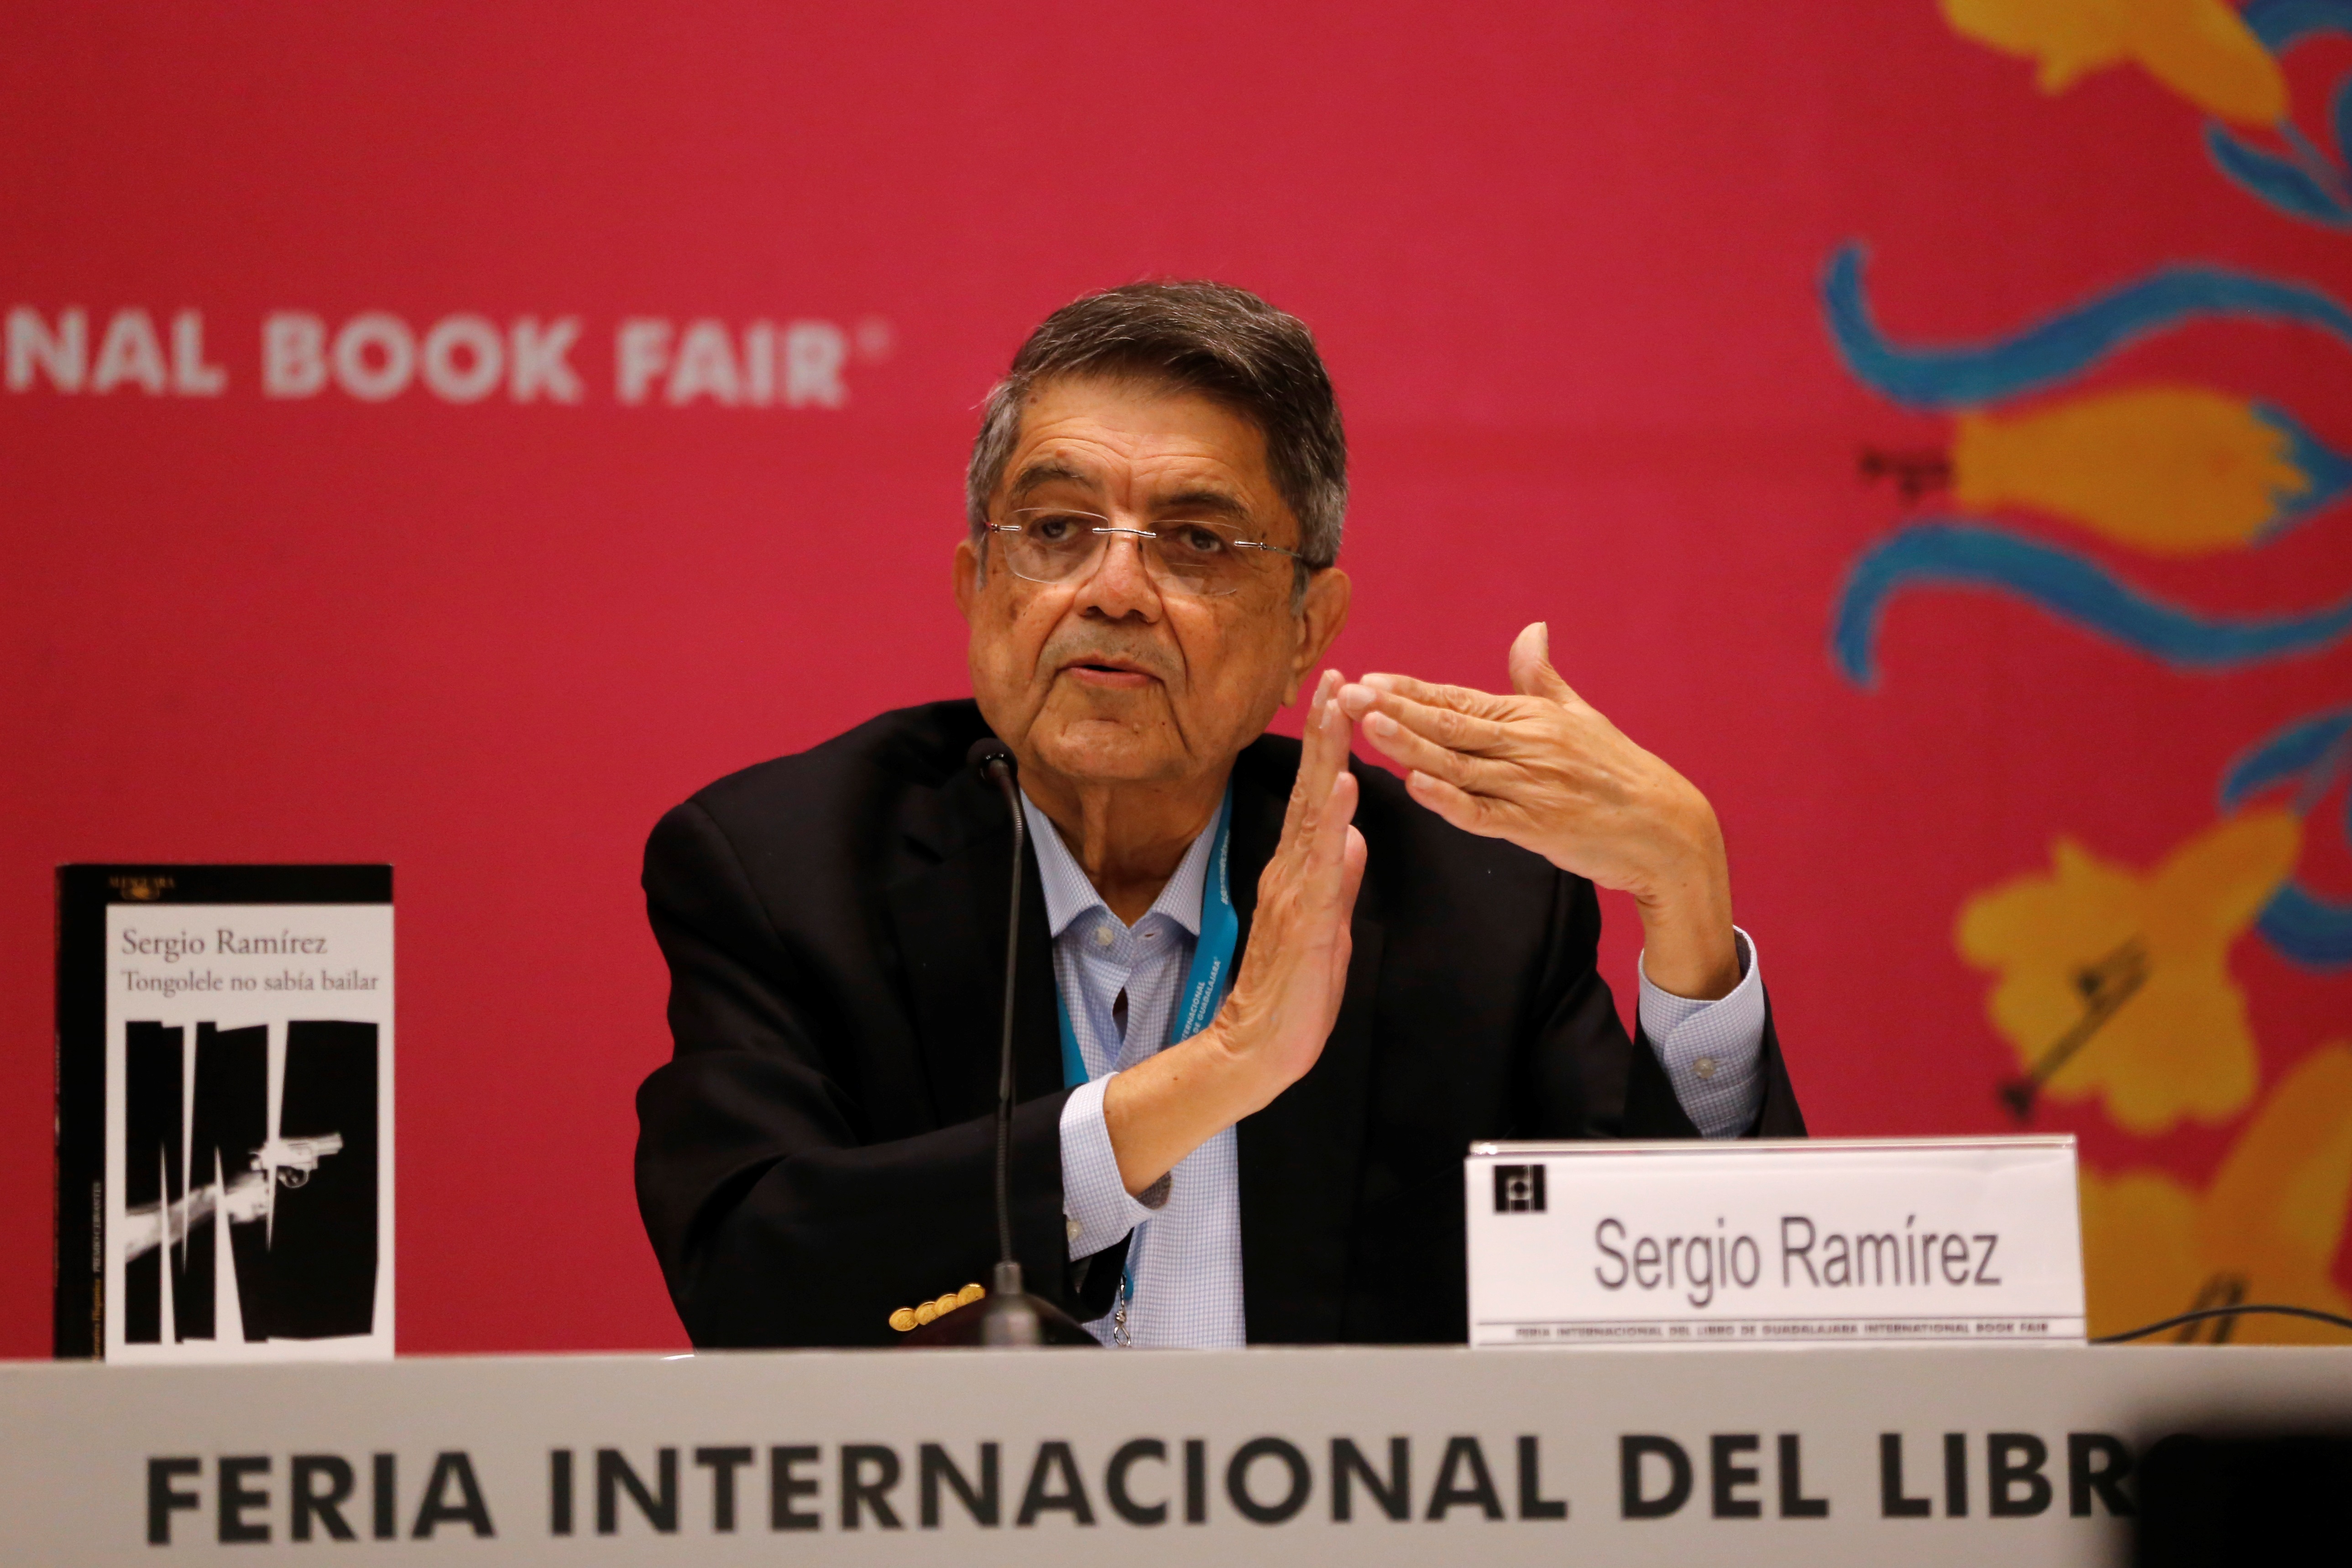 El escritor y catedrático Sergio Ramírez fue vicepresidente de Nicaragua entre 1985 y 1990 (Foto: EFE/Francisco Guasco)
